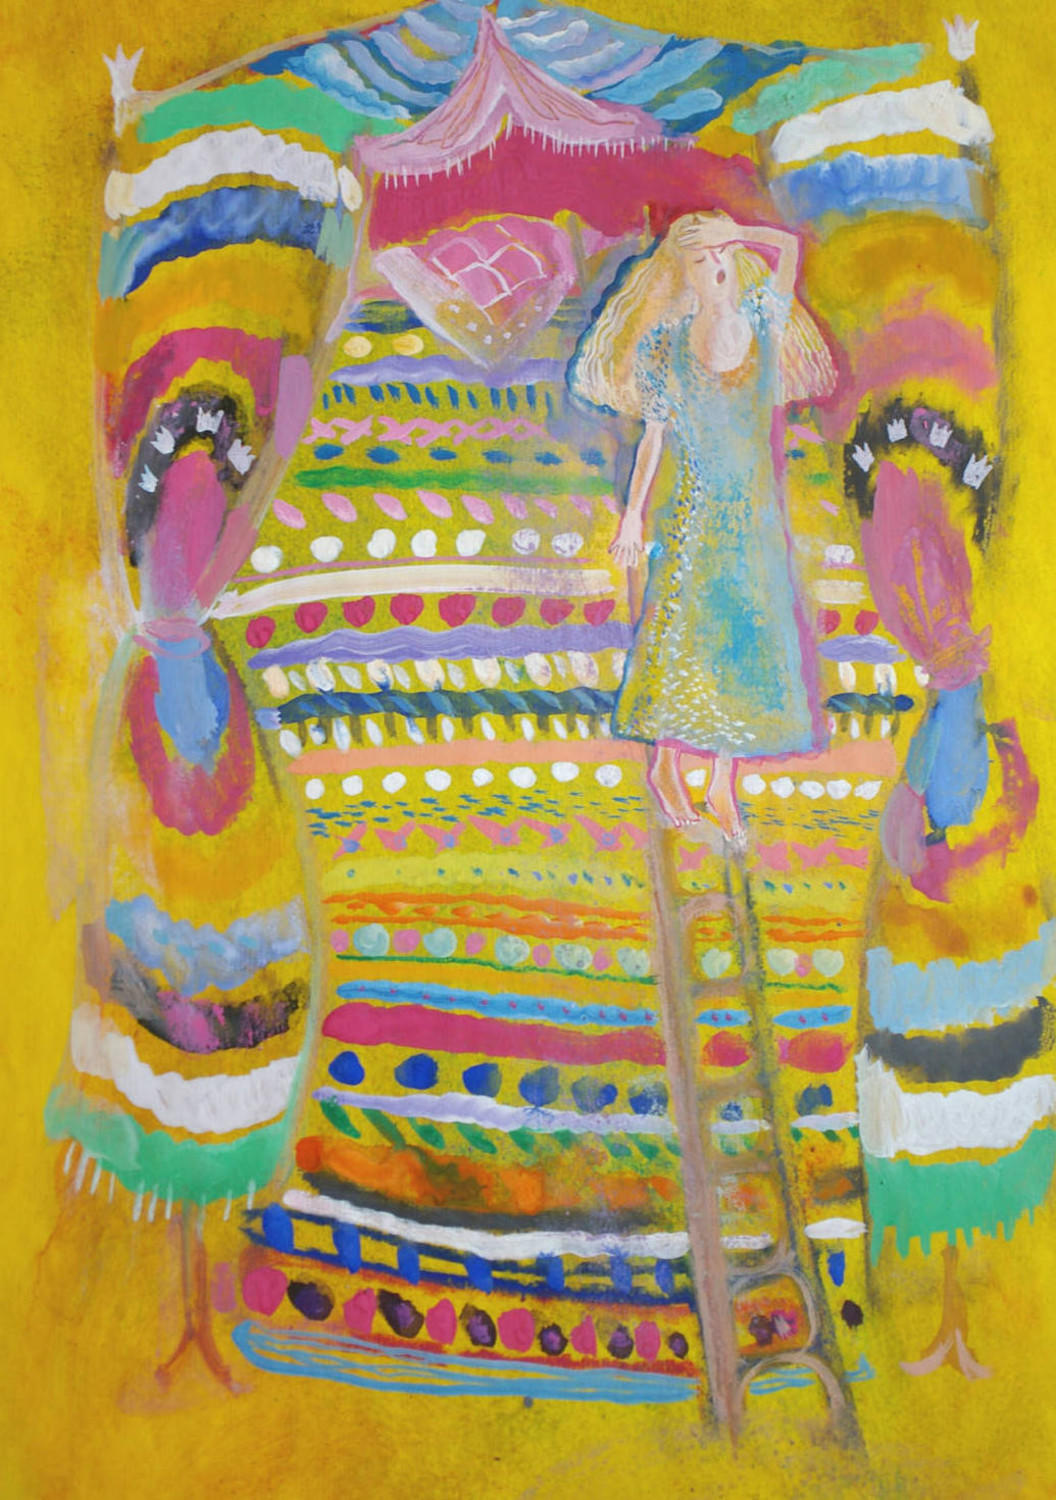 Принцесса на горошине (Детская серия). Света Иванова. 2004, бумага, смешанная техника, 29x40